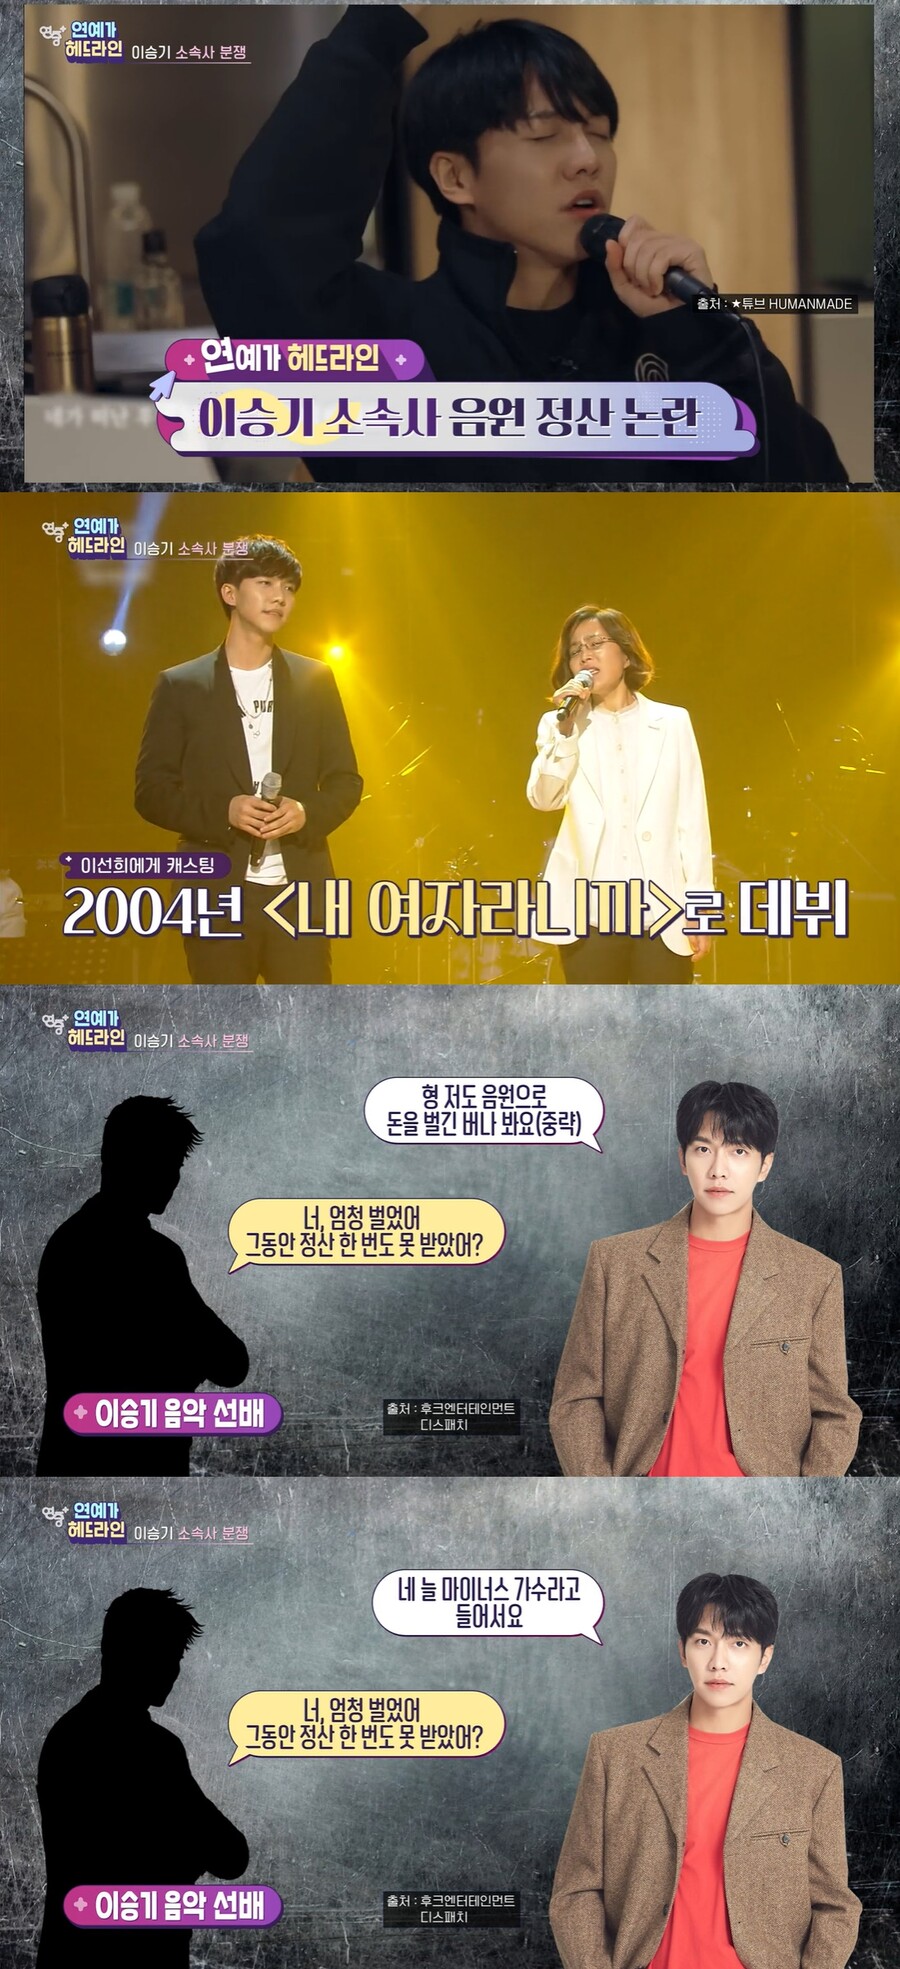 ▲ KBS2 예능프로그램 '연중 플러스' 방송화면. 출처| KBS